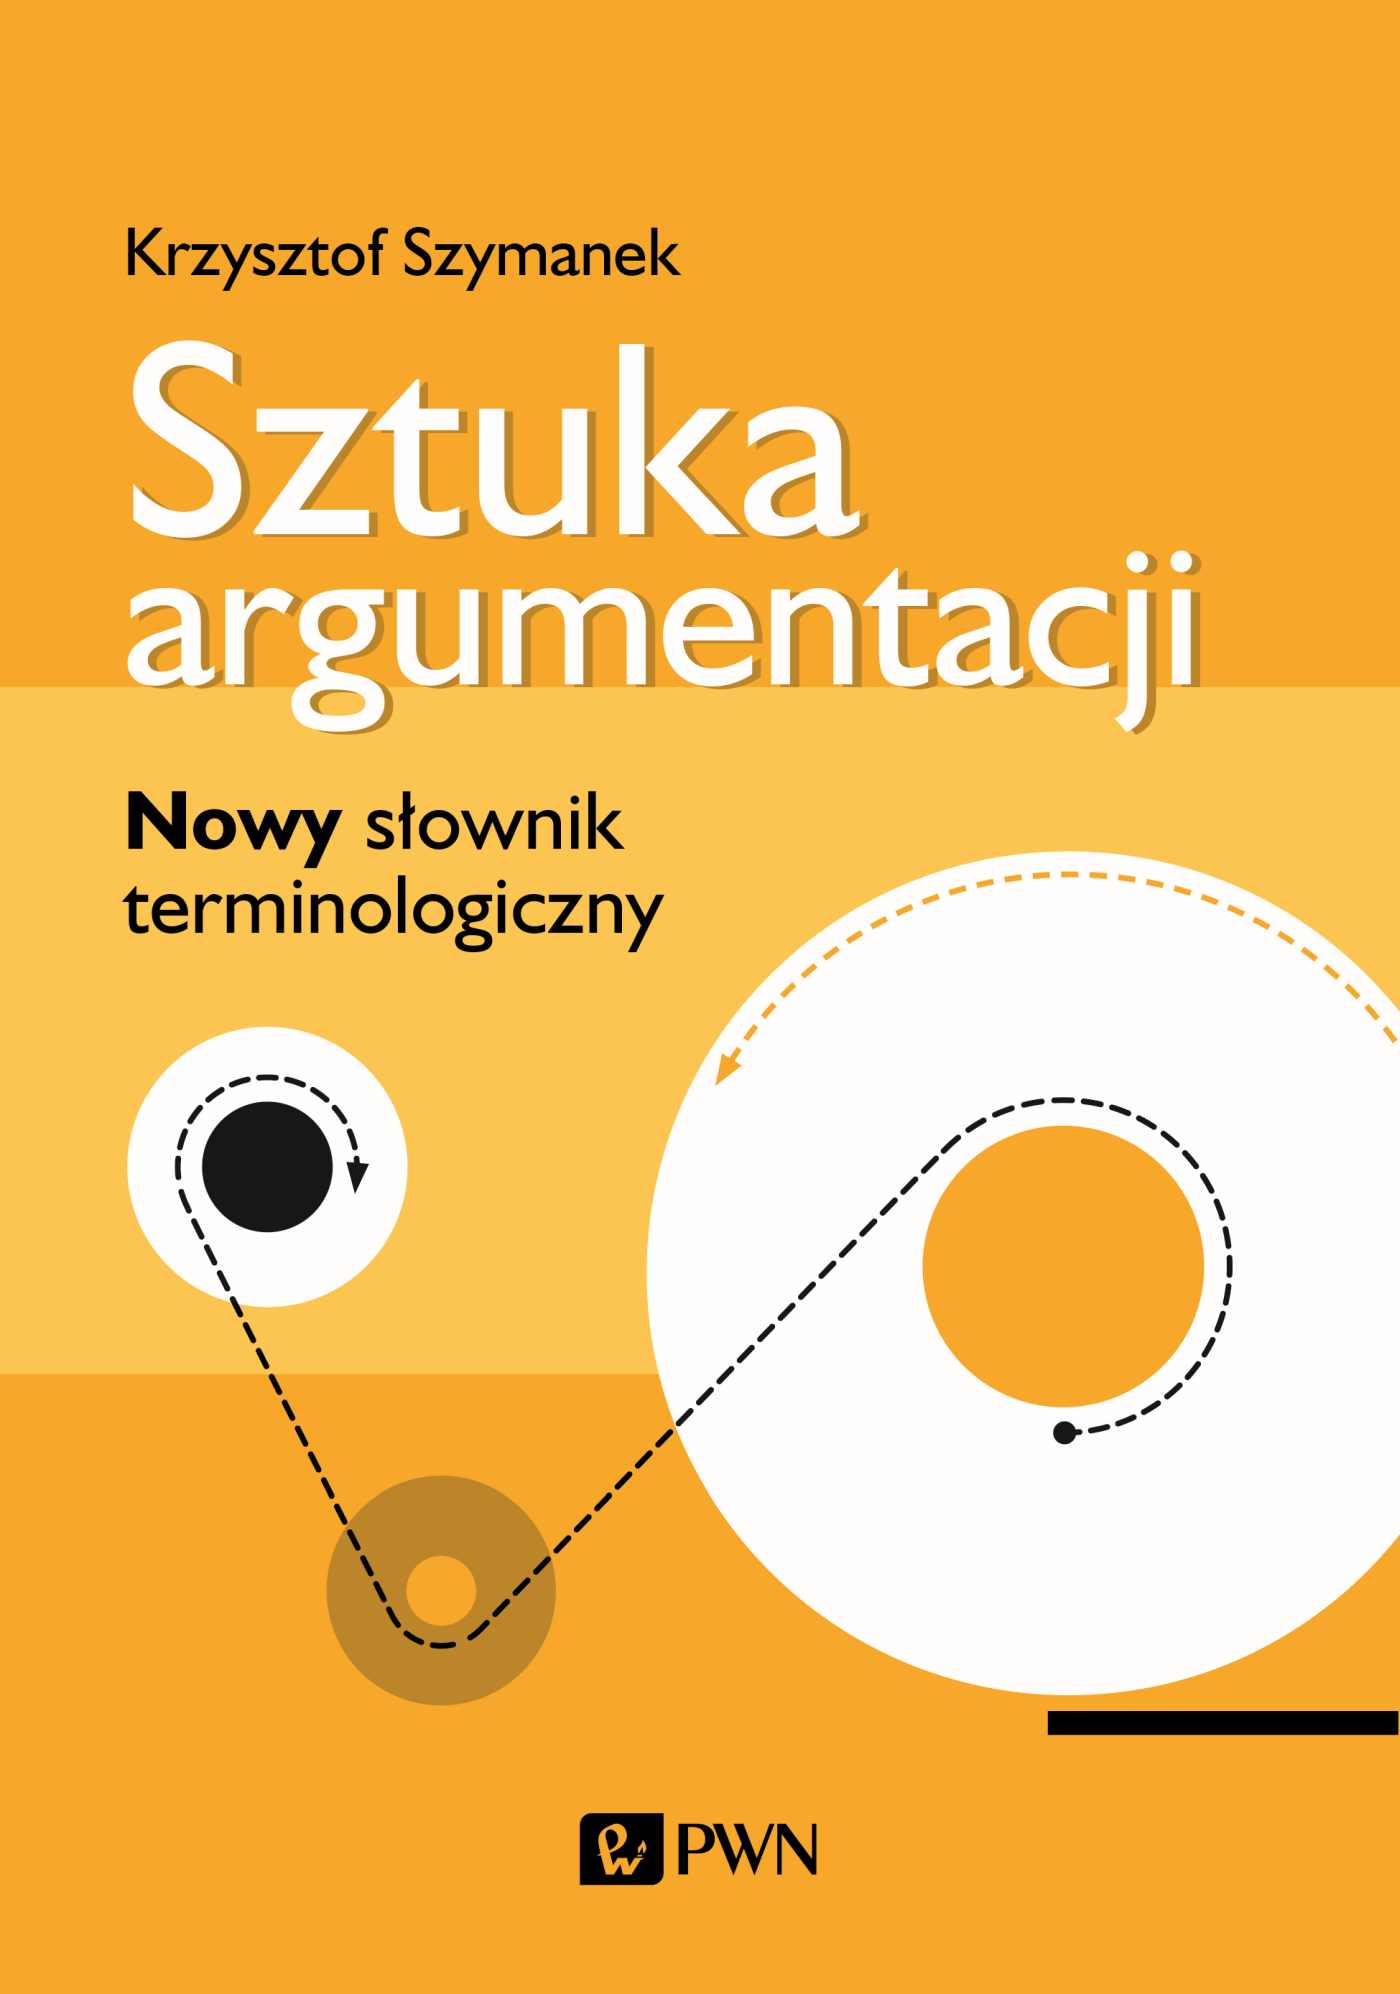 Kniha Sztuka argumentacji Szymanek Krzysztof